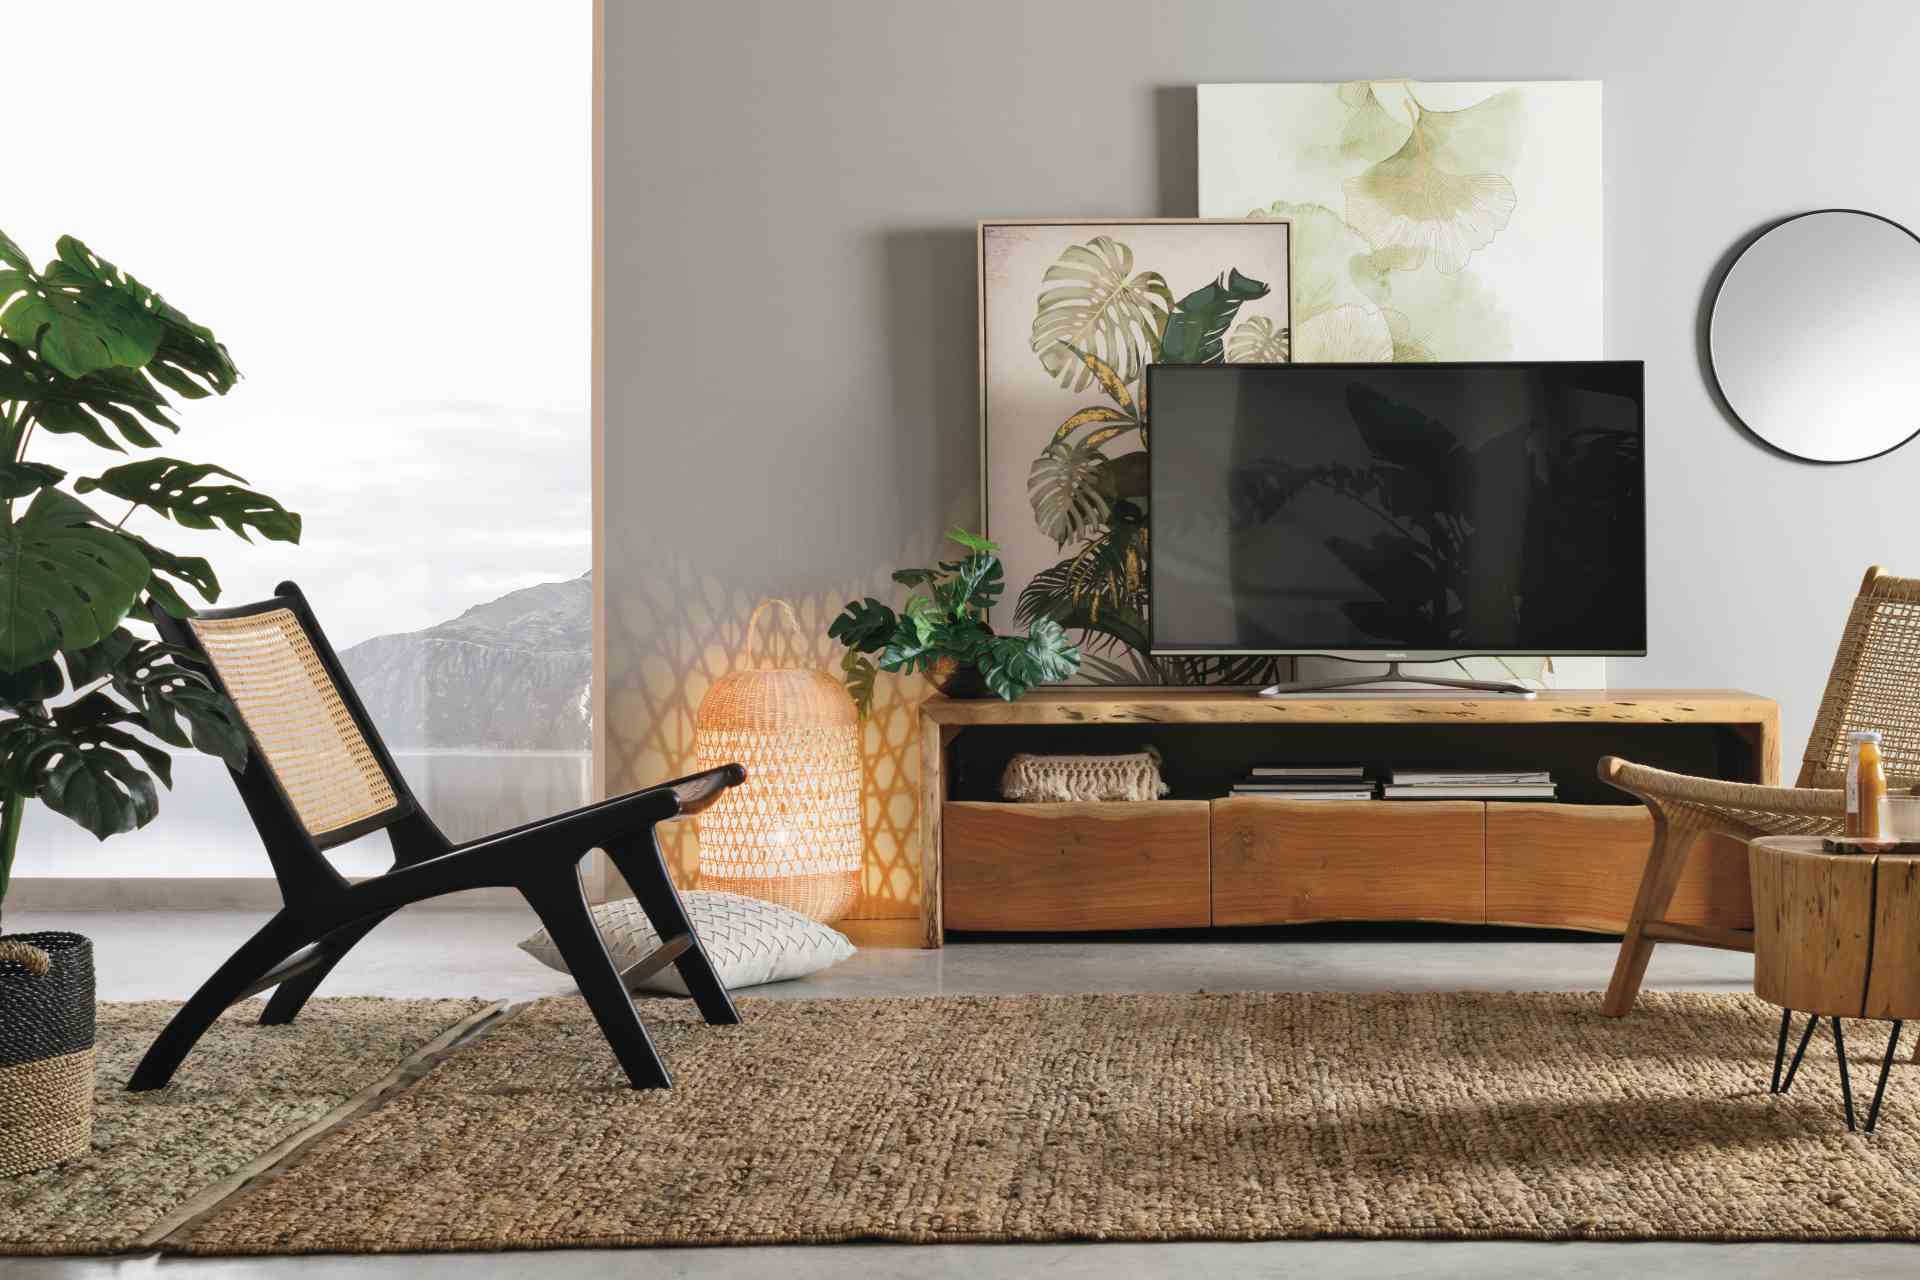 Das TV Board Eneas überzeugt mit seinem modernen Design. Gefertigt wurde es aus Akazienholz, welches einen natürlichen Farbton besitzt. Das Gestell ist auch aus Akazienholz. Das TV Board verfügt über drei Schubladen und ein Fach. Die Breite beträgt 160 cm